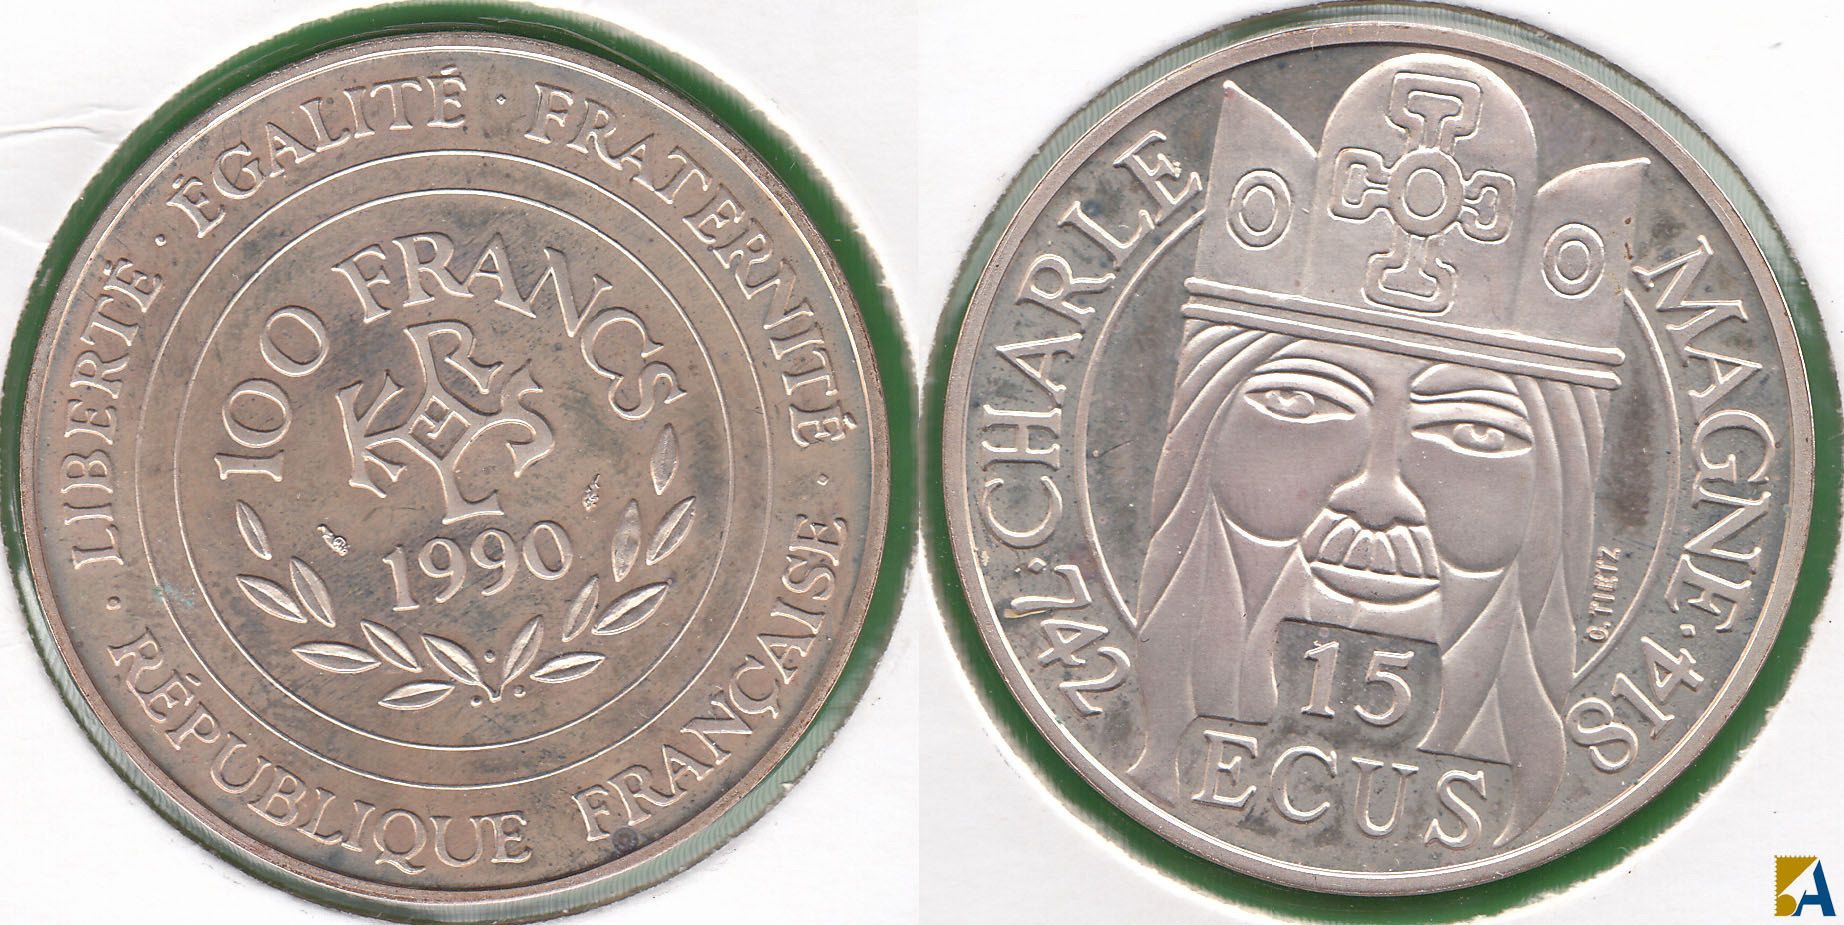 FRANCIA - FRANCE. 15 ECUS DE 1990. PLATA 0.900.